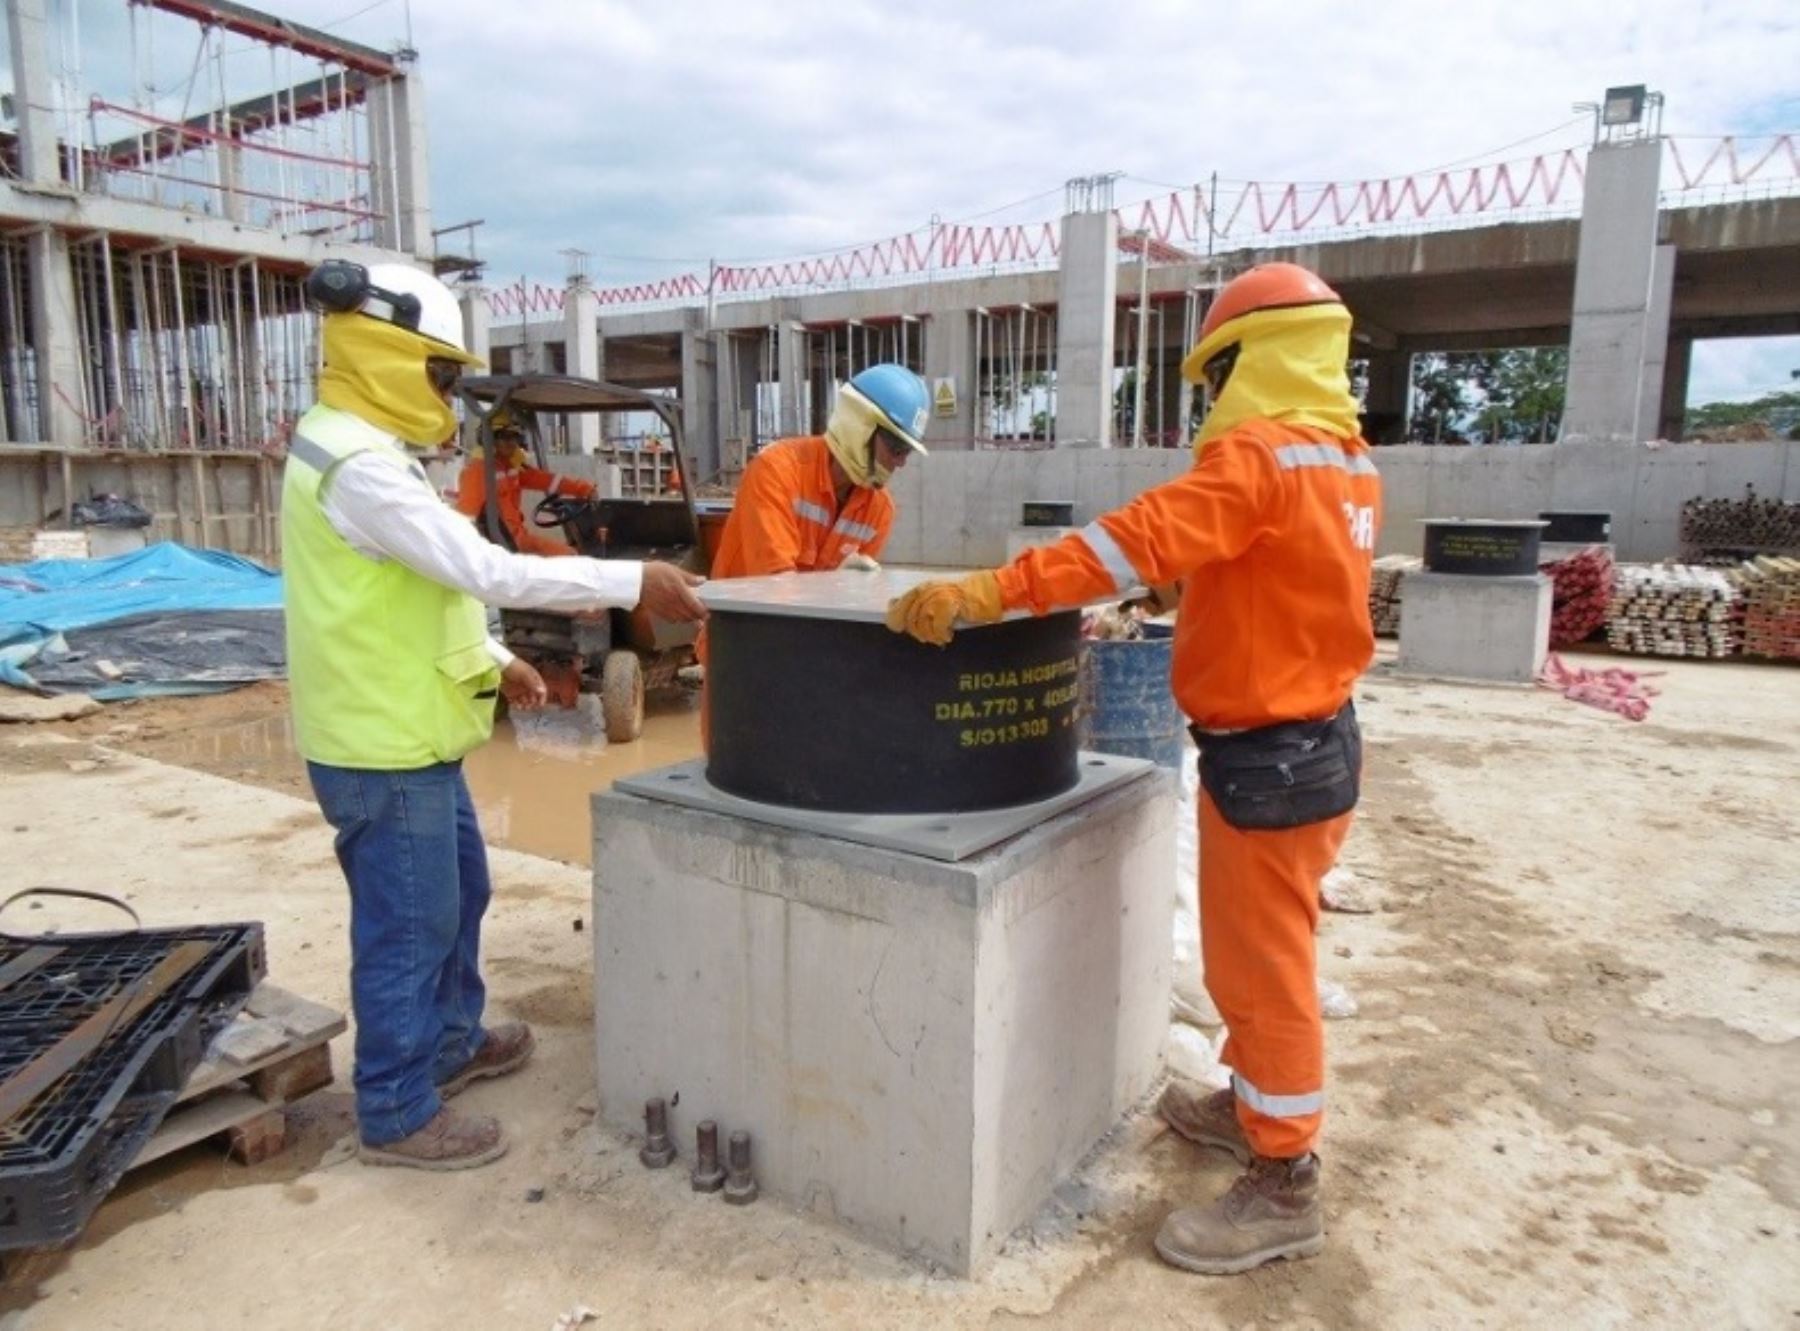 Instalación de aisladores sísmicos en construcción de nuevo hospital de Rioja en la región San Martín.